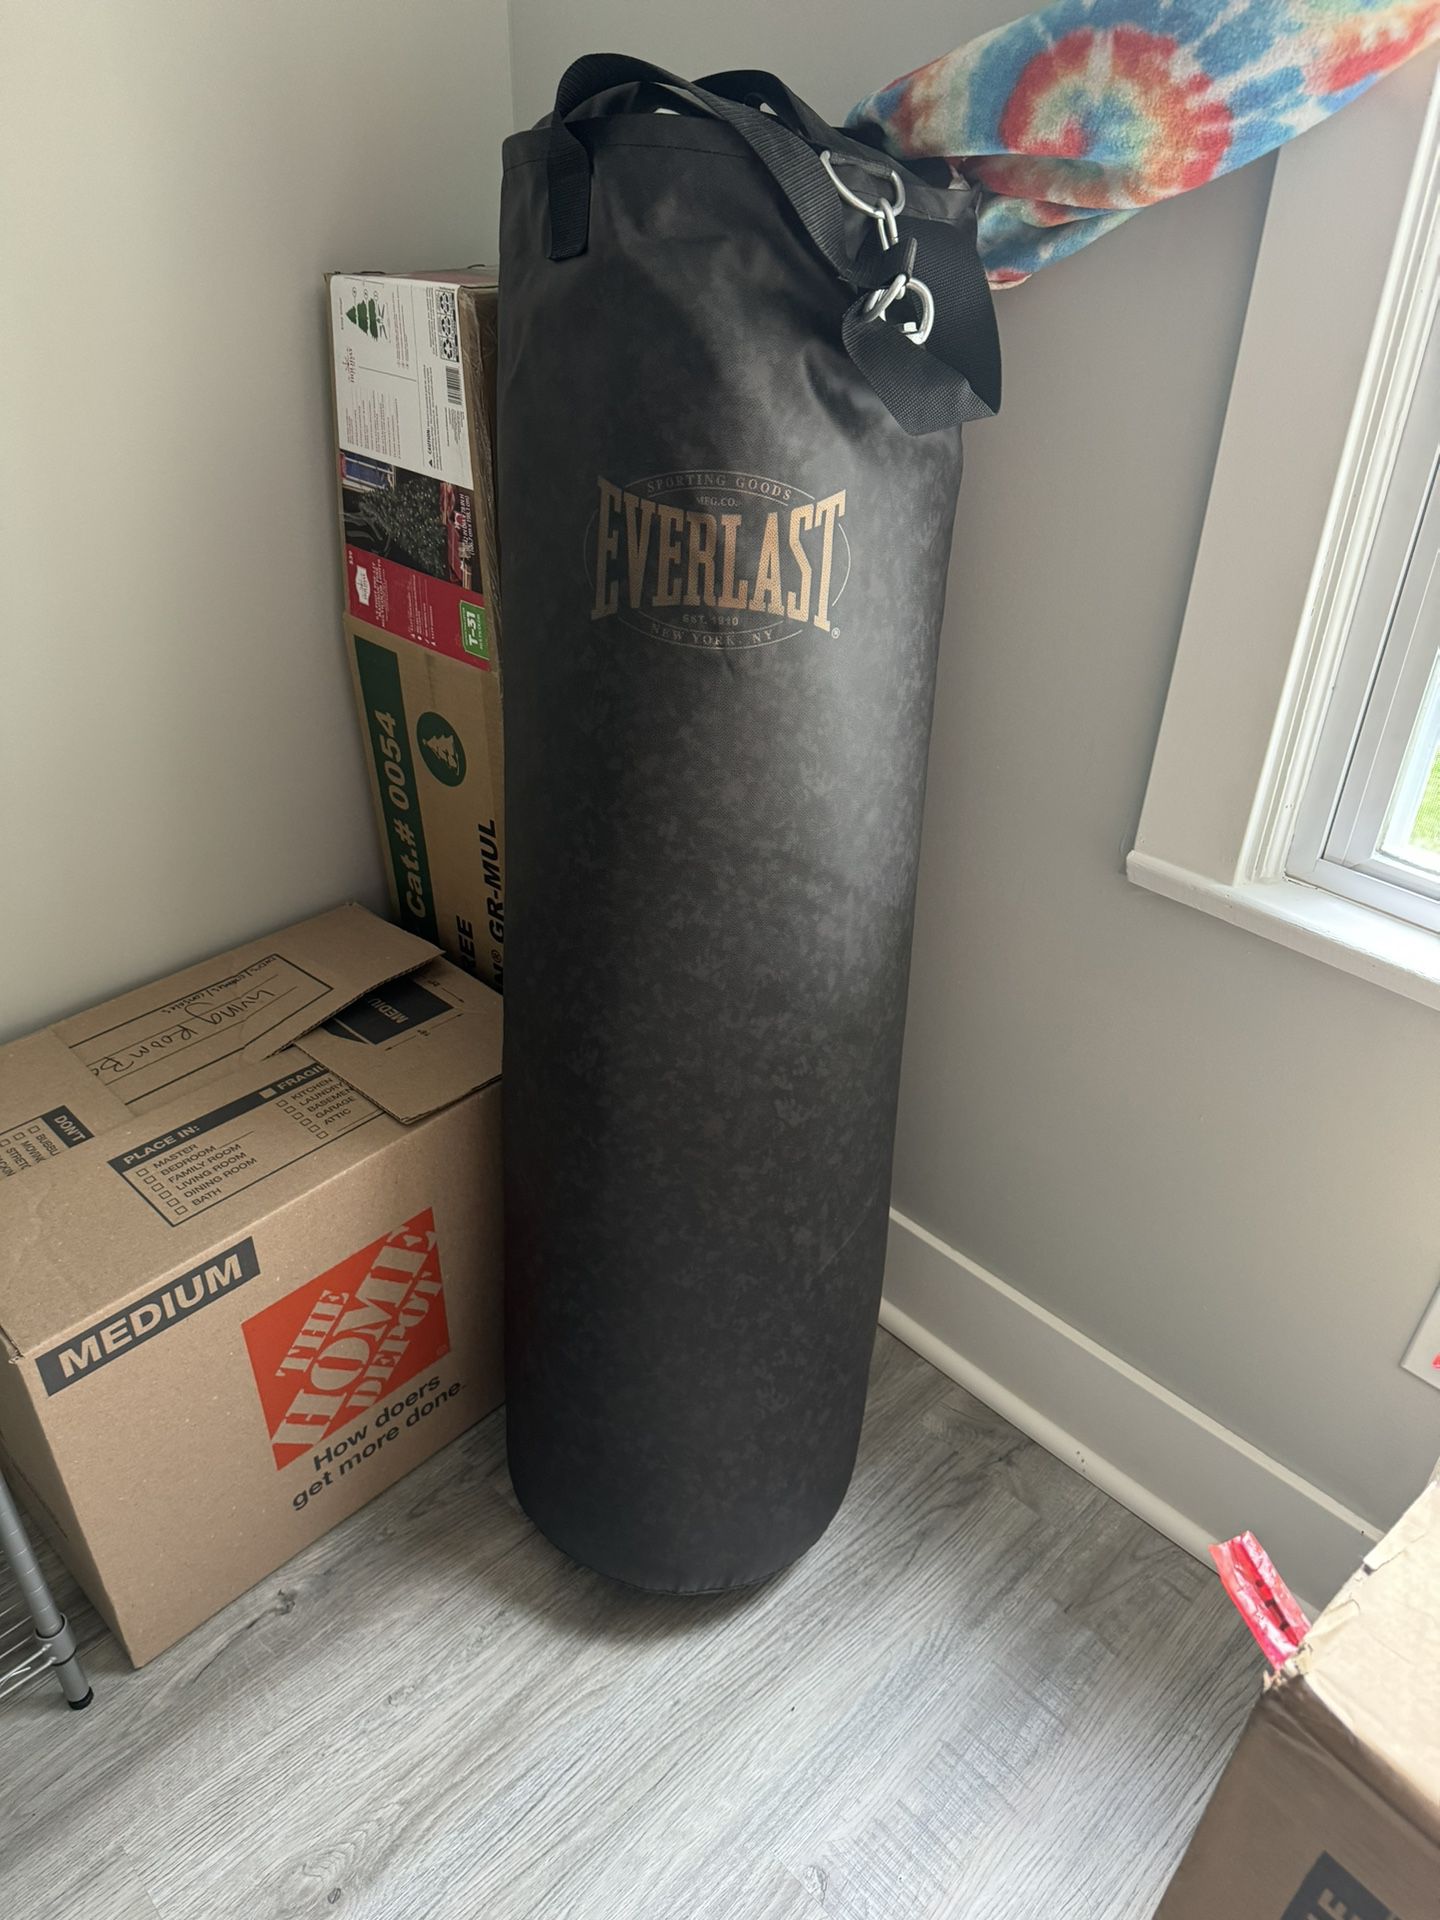 Boxing Bag - 100lb 